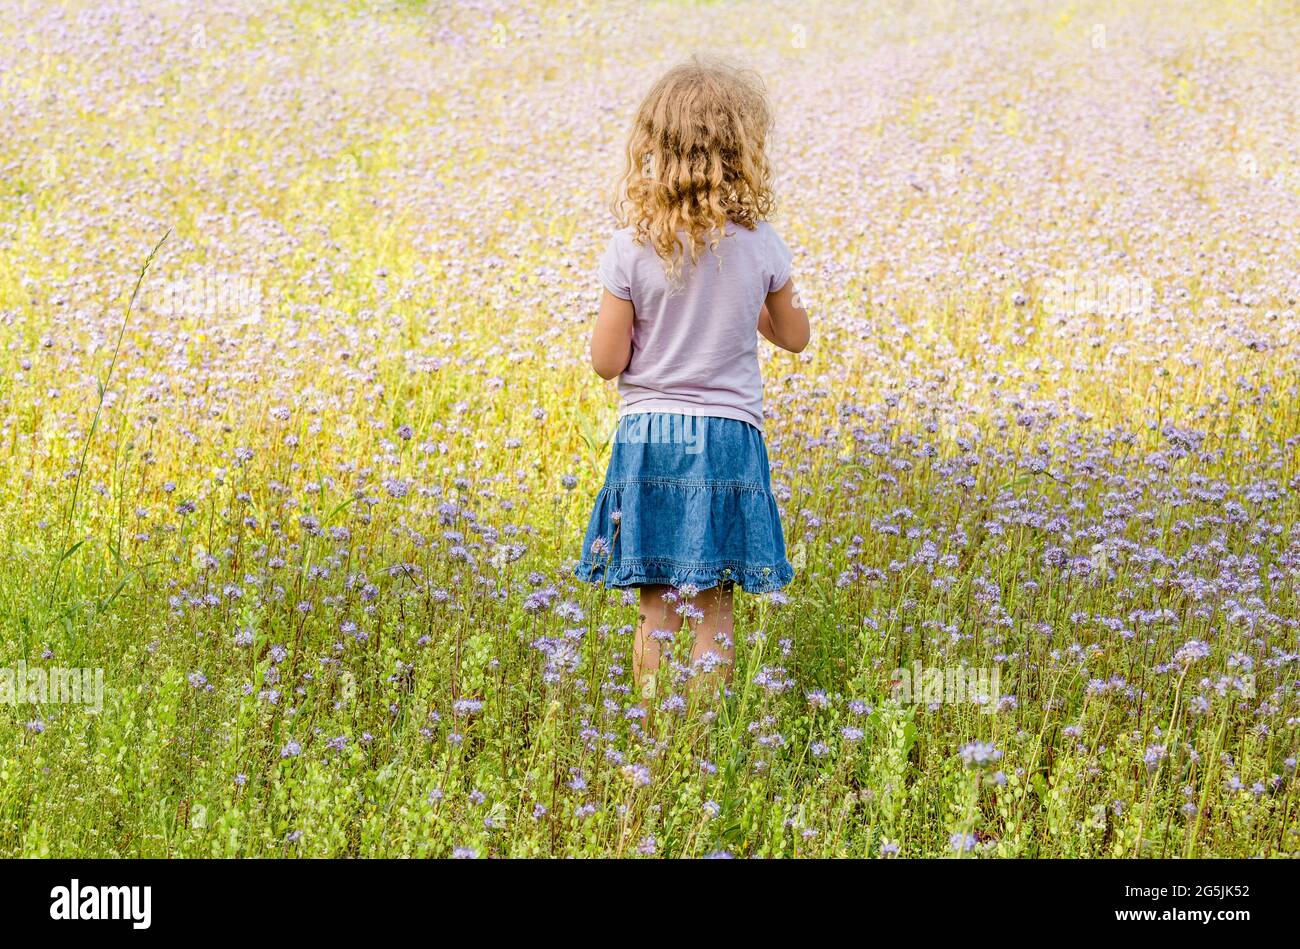 6 Jahre altes blondes lockiges Haar-Mädchen, das in Phacelia tanacetifolia steht, auch bekannt als lacy Phacelia, blue tansy oder purple tansy Flower Field. Stockfoto